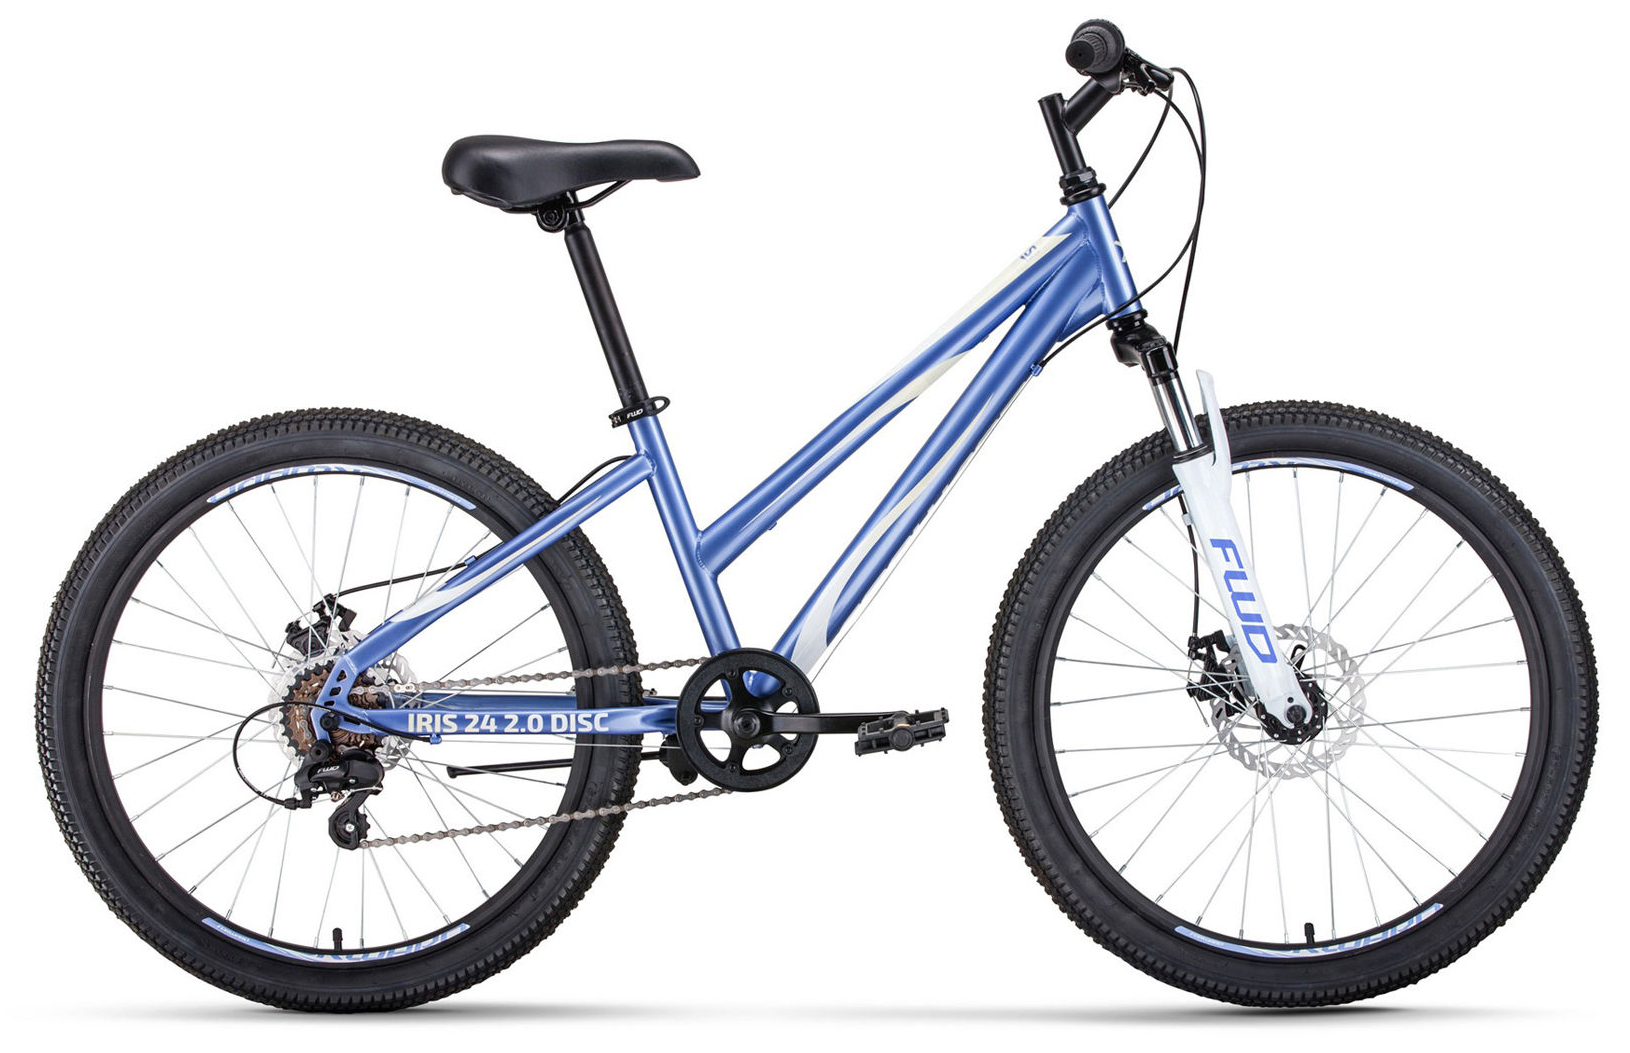  Отзывы о Подростковом велосипеде Forward Iris 24 2.0 Disc 2020